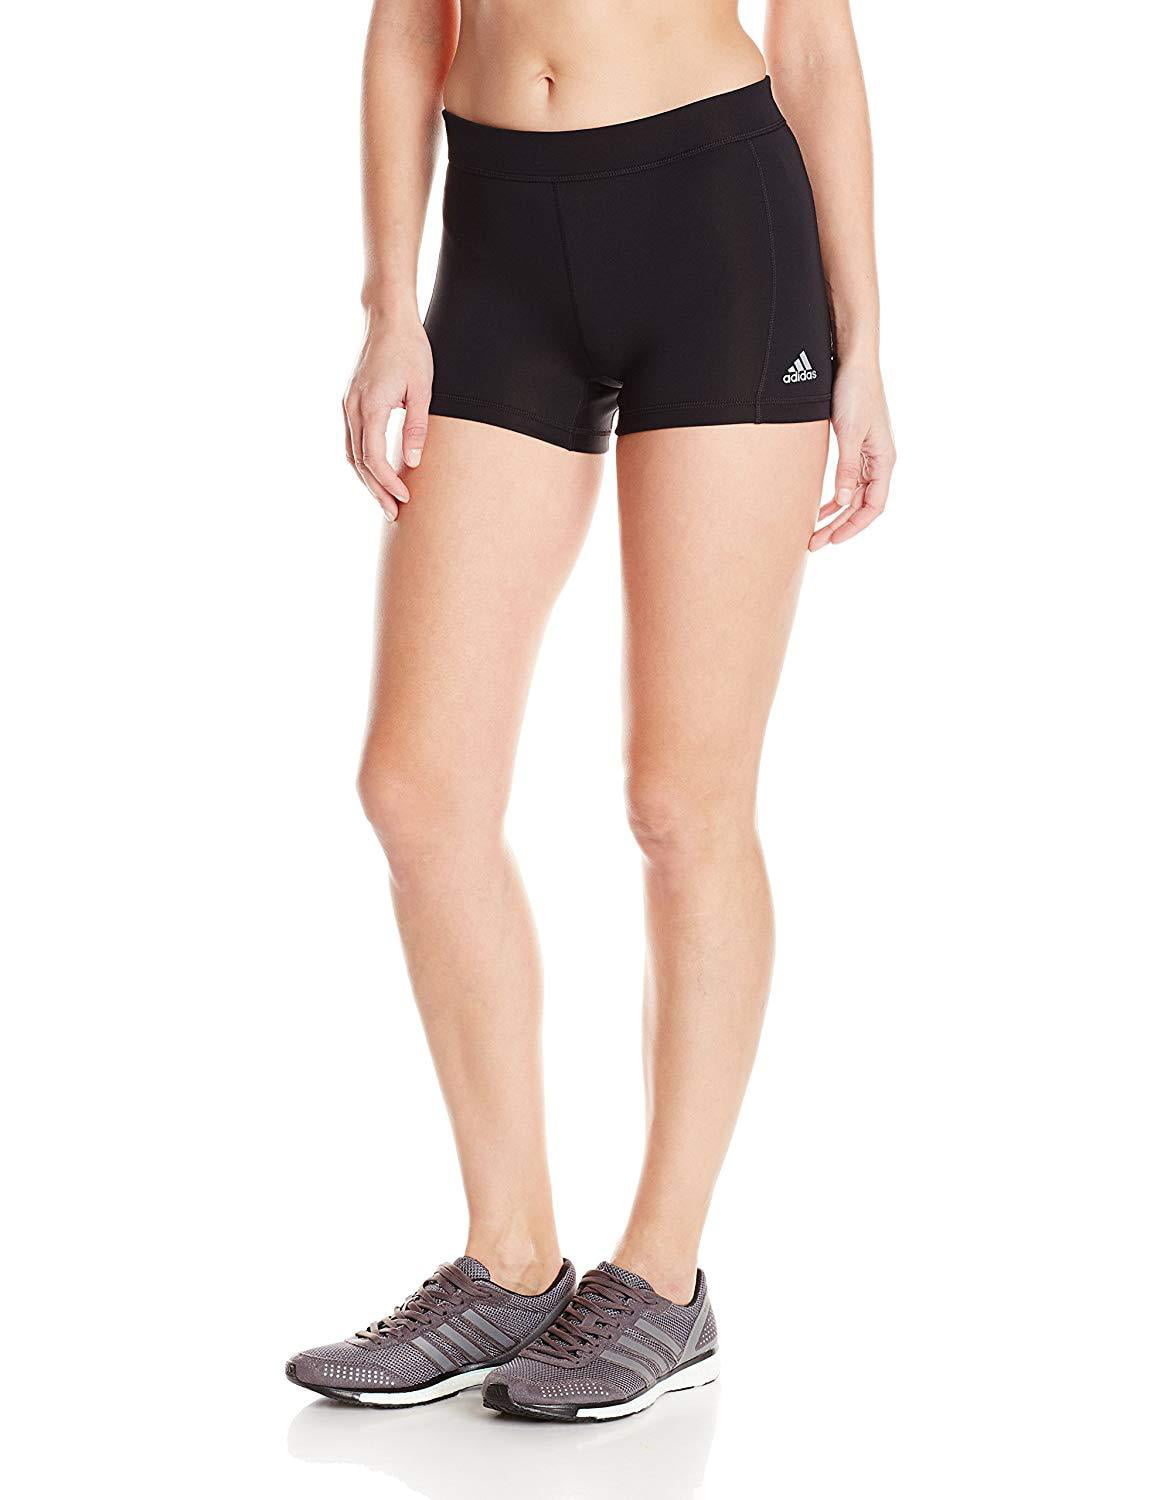 adidas women's techfit 5 inch boy shorts